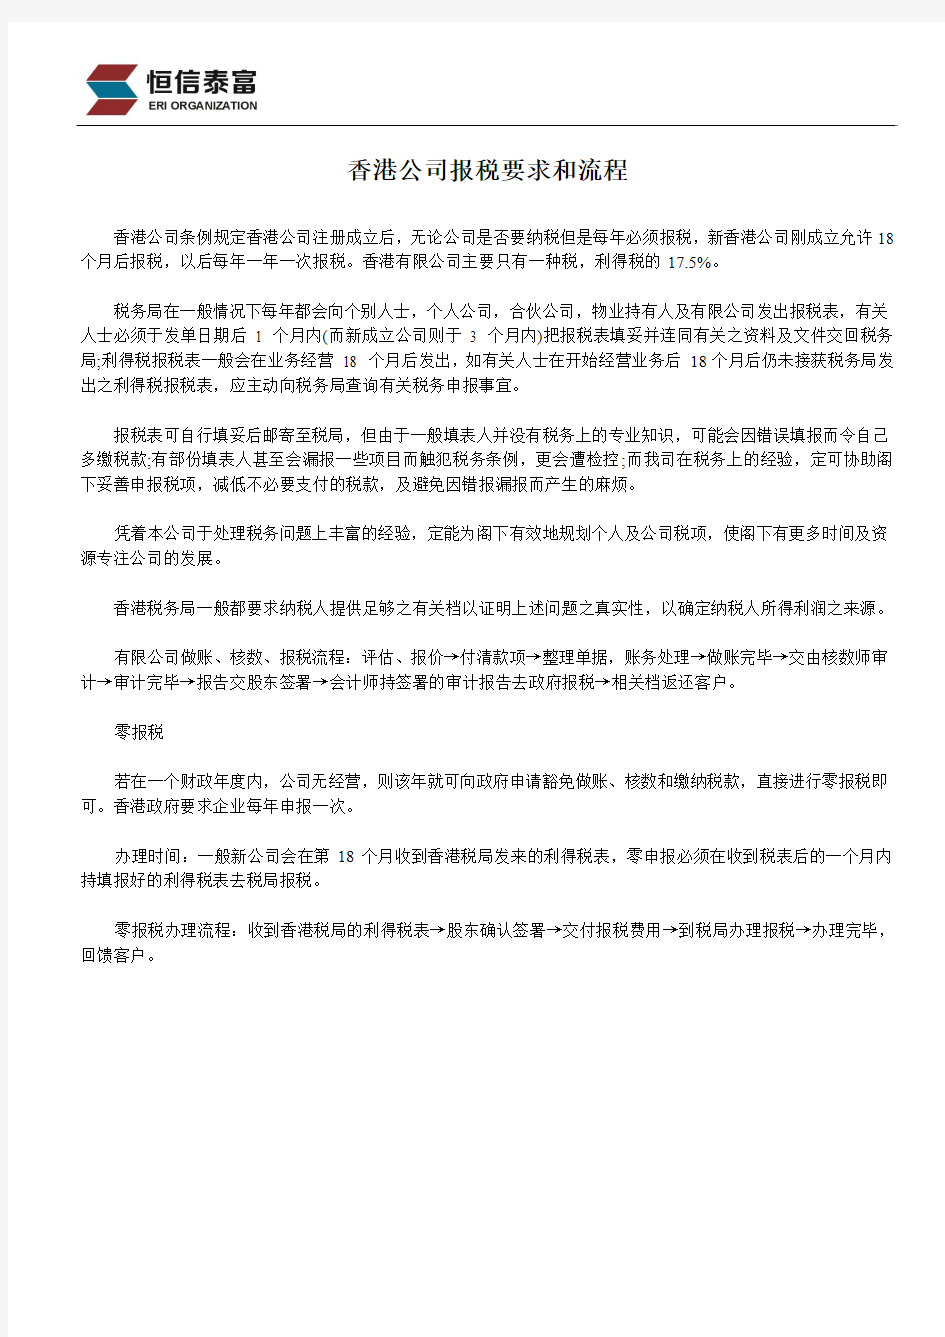 香港公司报税要求和流程